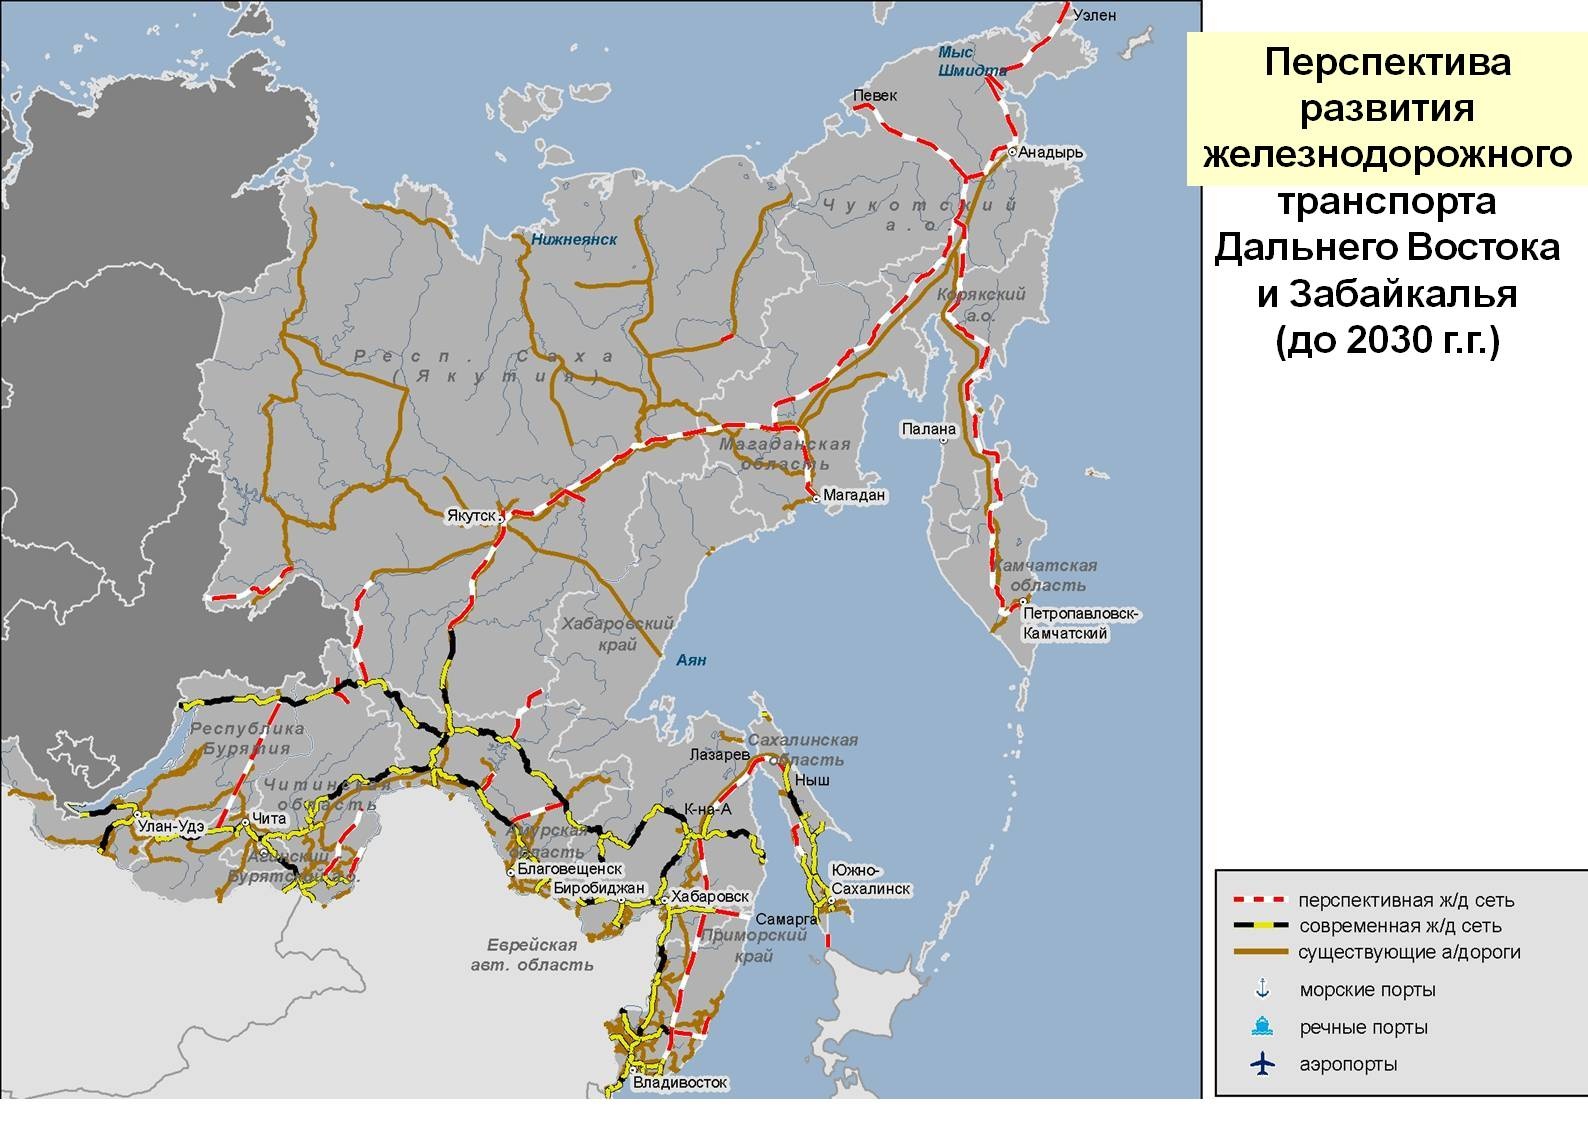 Федеральный проект железнодорожный транспорт и транзит